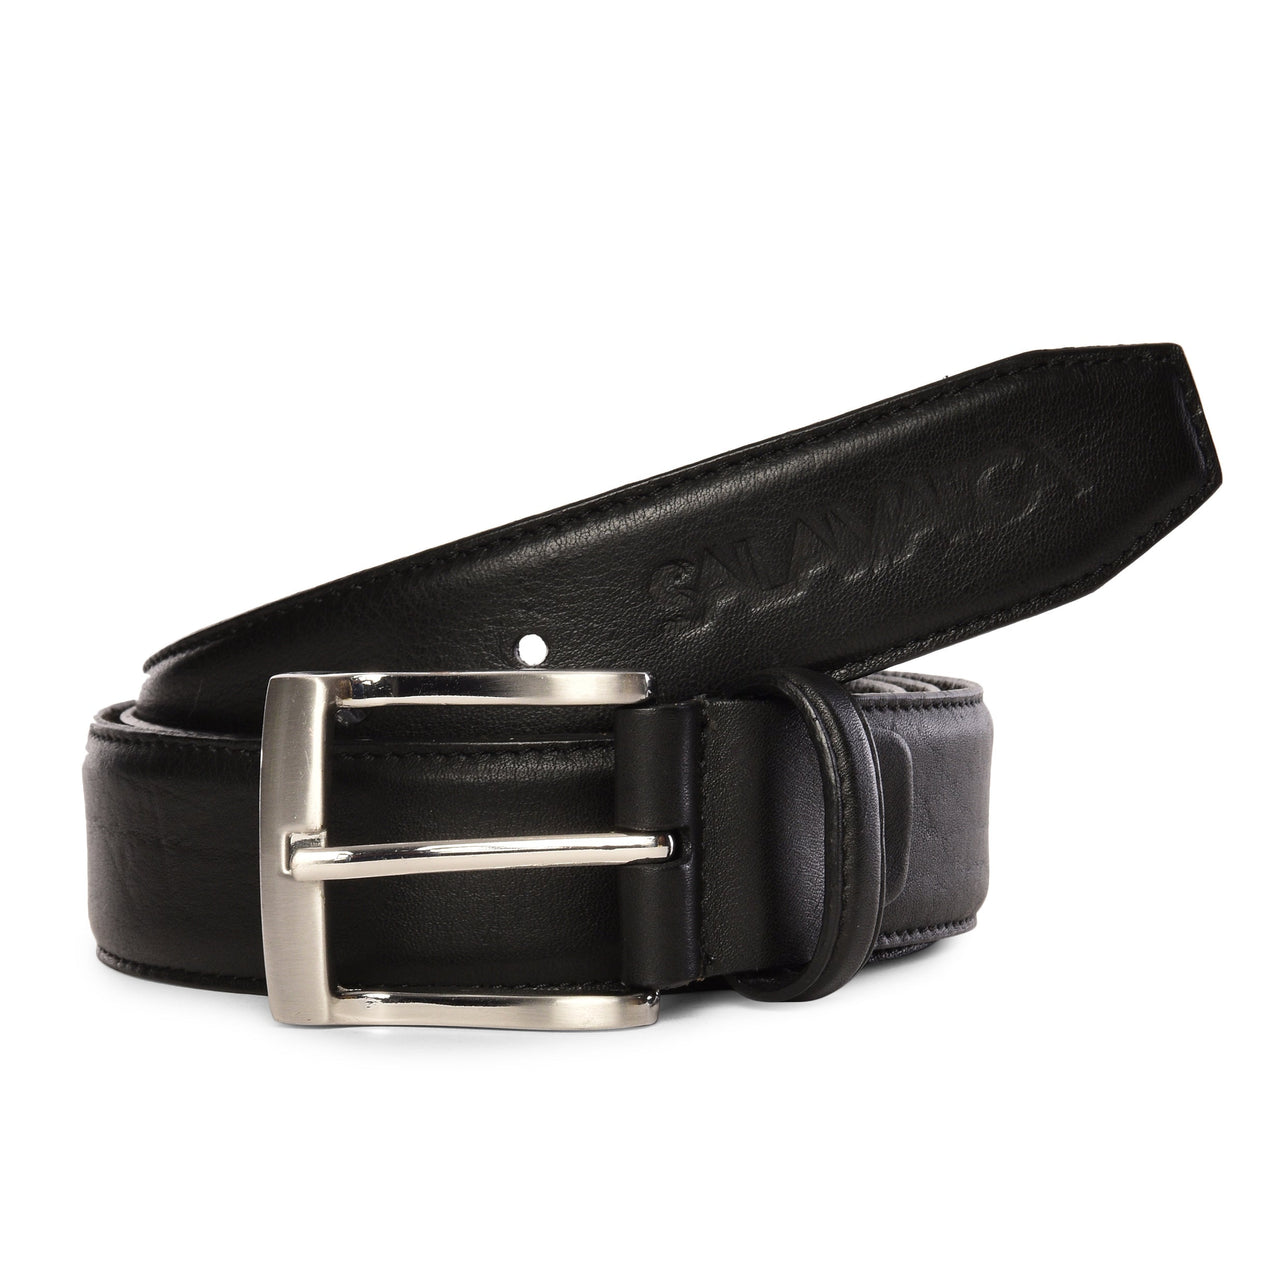 Reus Belt - Royal Black / 30 inch - 75 cm - Belts